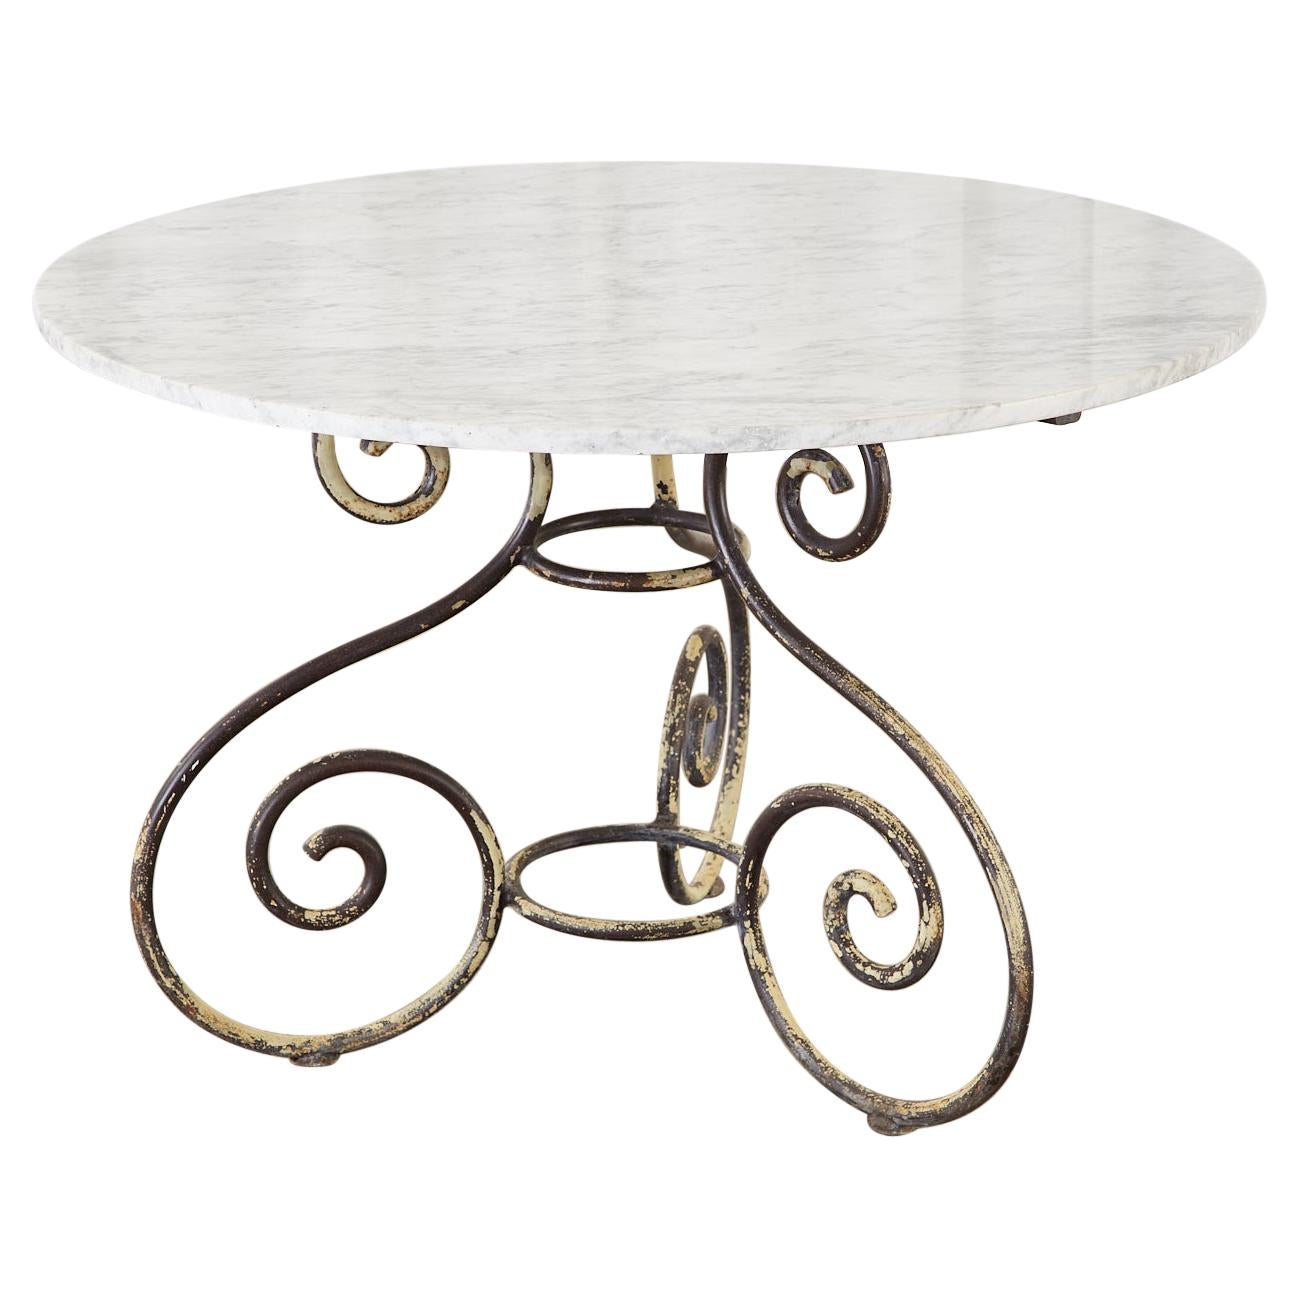 French Art Nouveau Carrrara Marble Iron Garden Dining Table